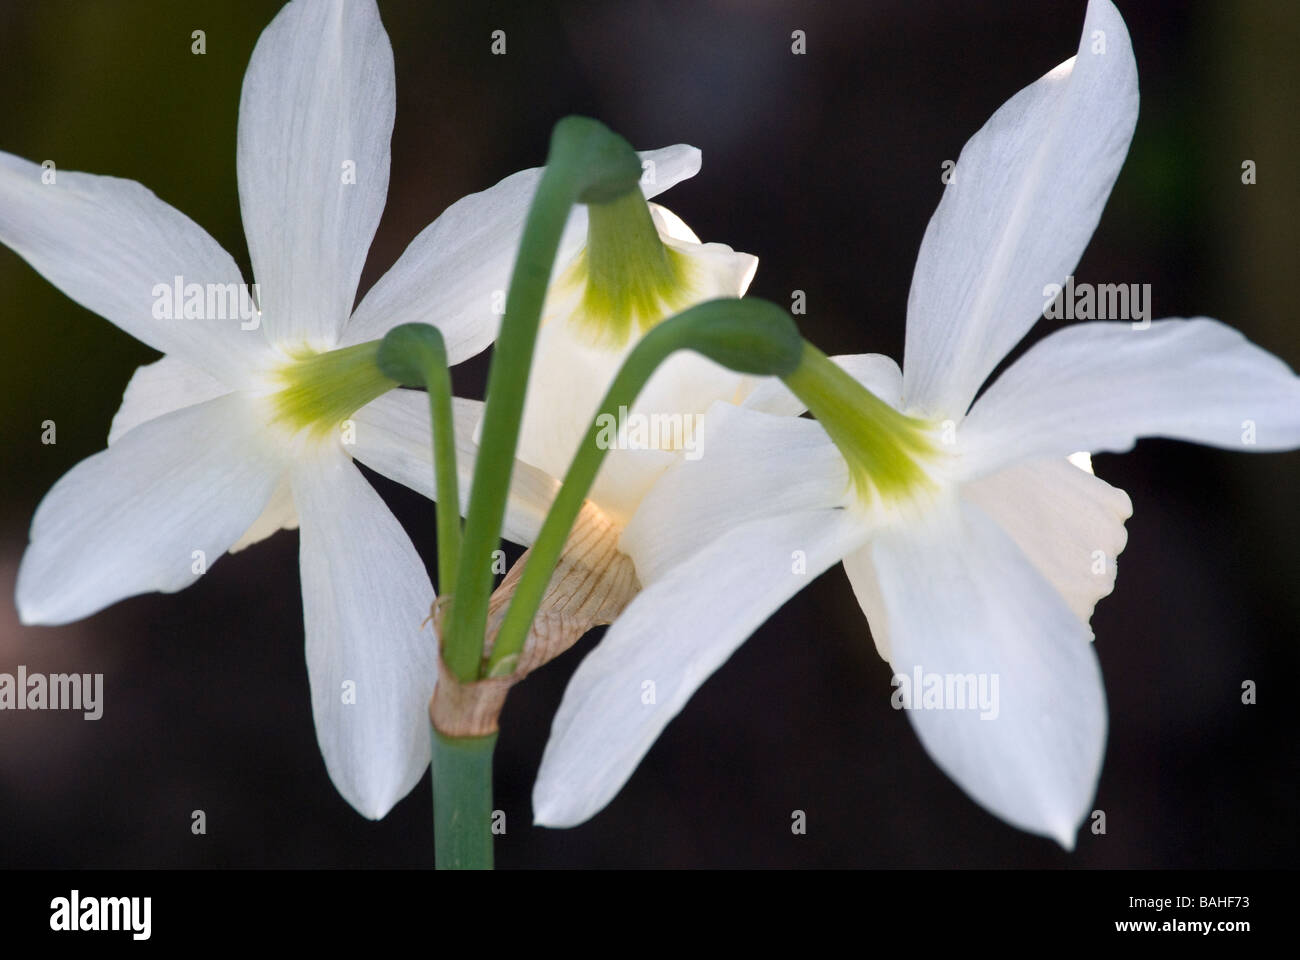 Narcissus Amaryllidaceae, a fioritura primaverile crema pallido Daffodil, close up 3 fiori rivolta lontano dalla fotocamera Foto Stock